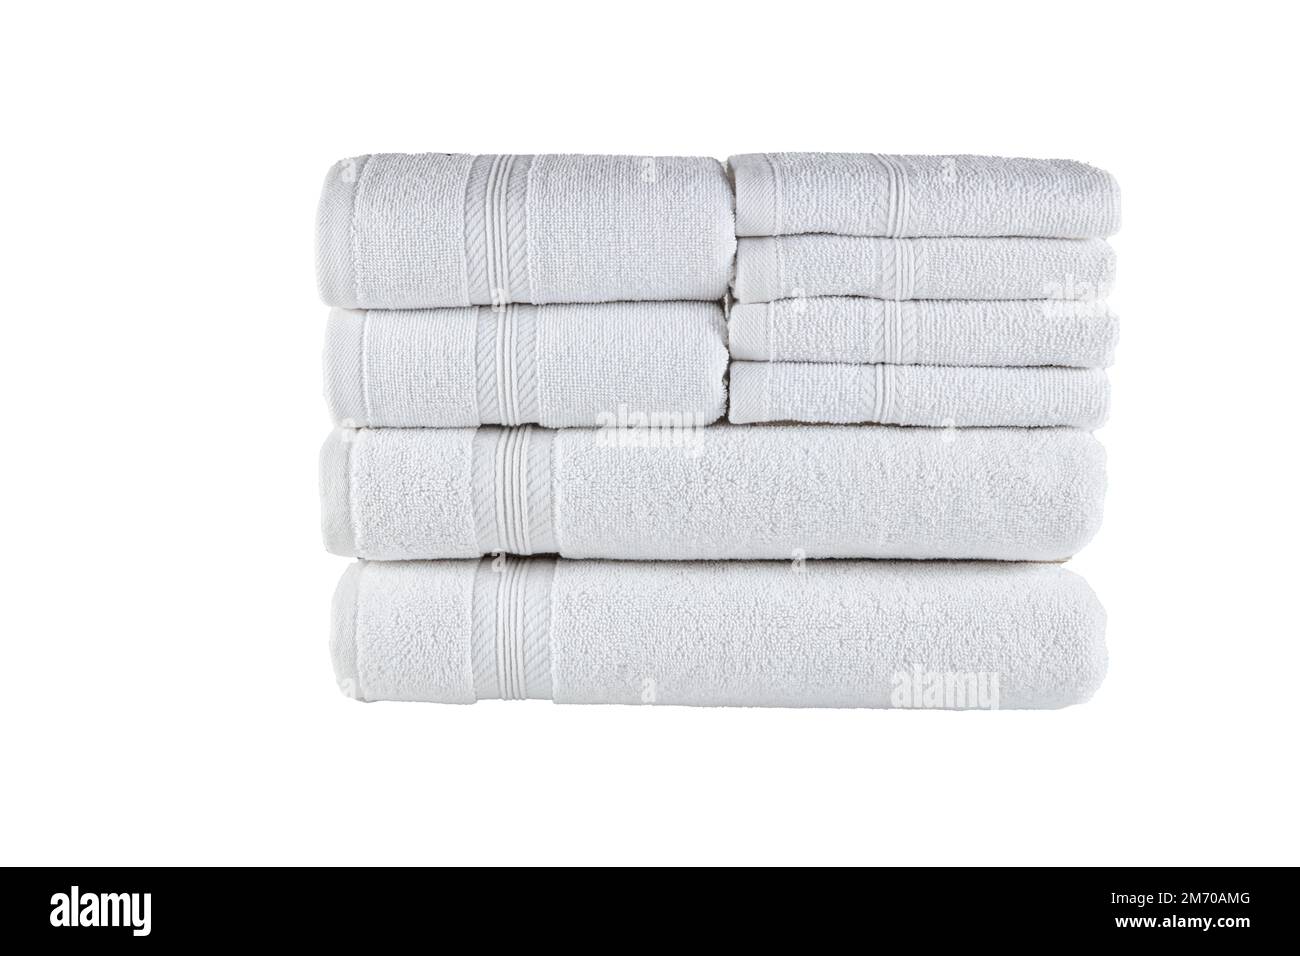 Terry - La spugna 100% cotone per i tuoi asciugamani